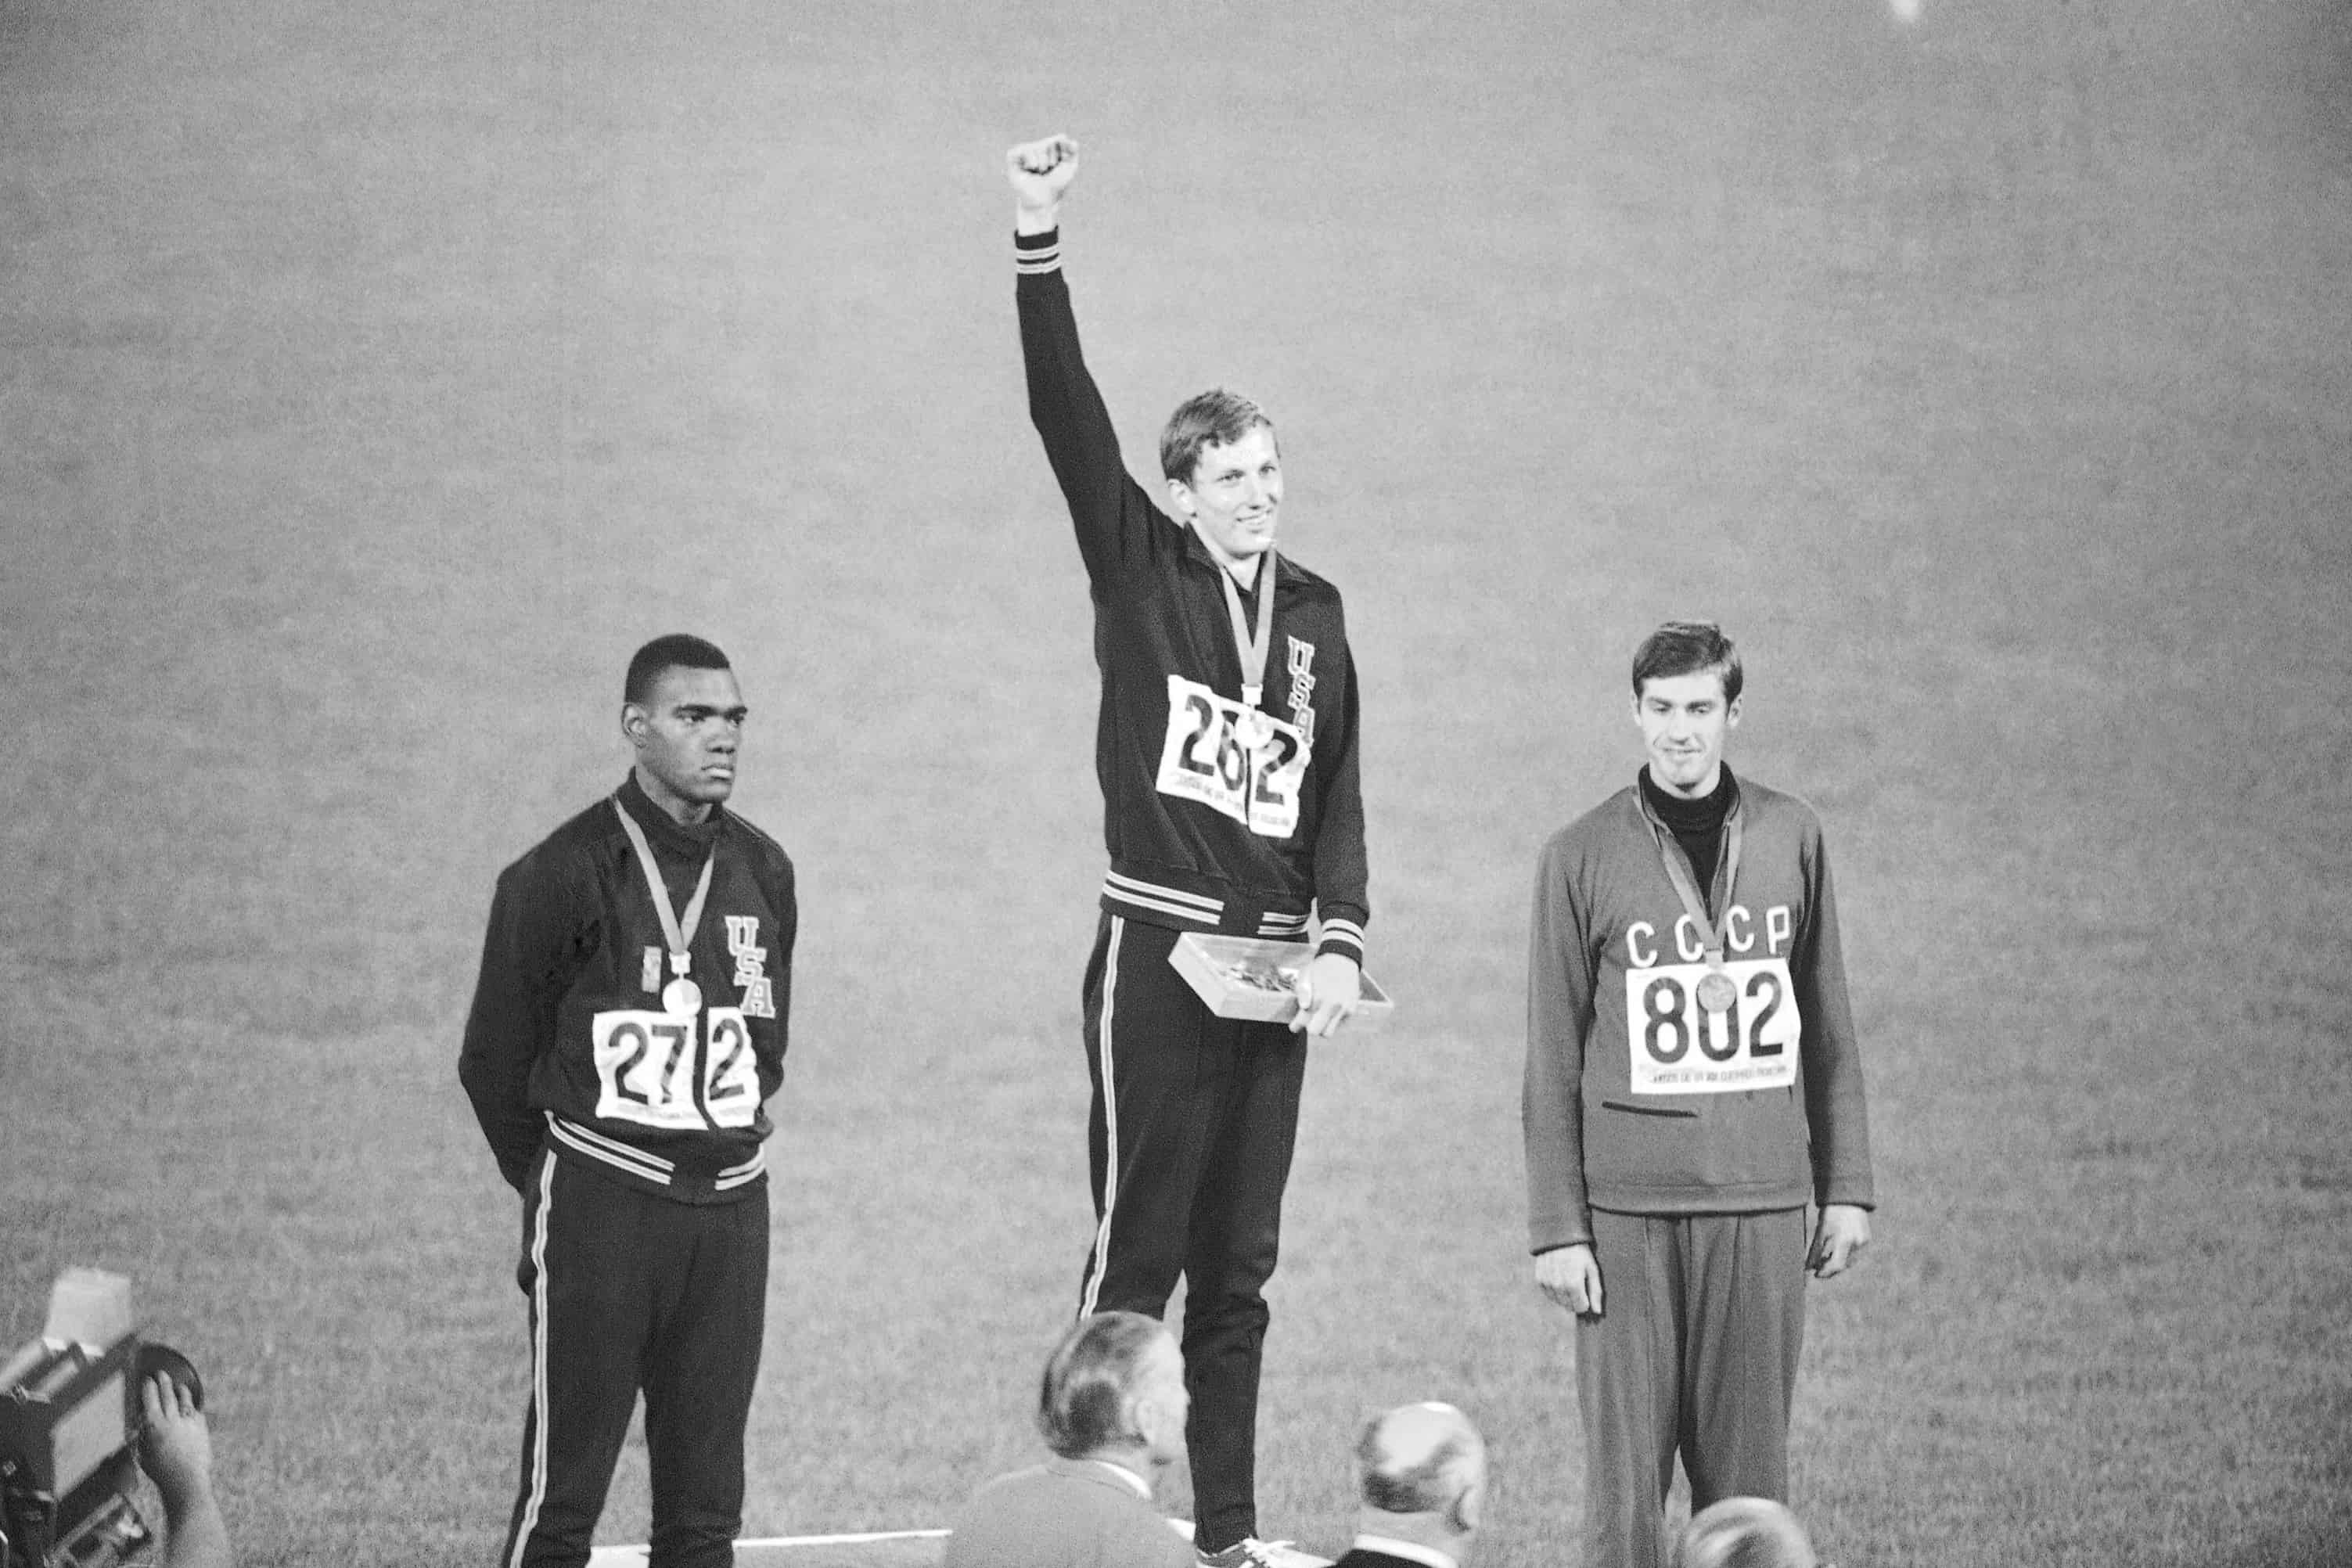 El ganador de la medalla de oro, el estadounidense Dick Fosbury, levanta el brazo en el podio de los vencedores del estadio olimpico, el 20 de octubre de 1968, en la Ciudad de Mexico. A la izquierda esta el medallista de plata Ed Caruthers de los EE. UU. y a la derecha esta el medallista de bronce Valentin Gavrilov de Rusia. Fosbury, el saltador larguirucho que renovo por completo la disciplina tecnica del salto de altura y gano una medalla de oro olimpica con su Fosbury Flop, murio despues de una recurrencia de linfoma. Fosbury murio el domingo 12 de marzo de 2023, segun su publicista, Ray Schulte. Tenia 76 anos.